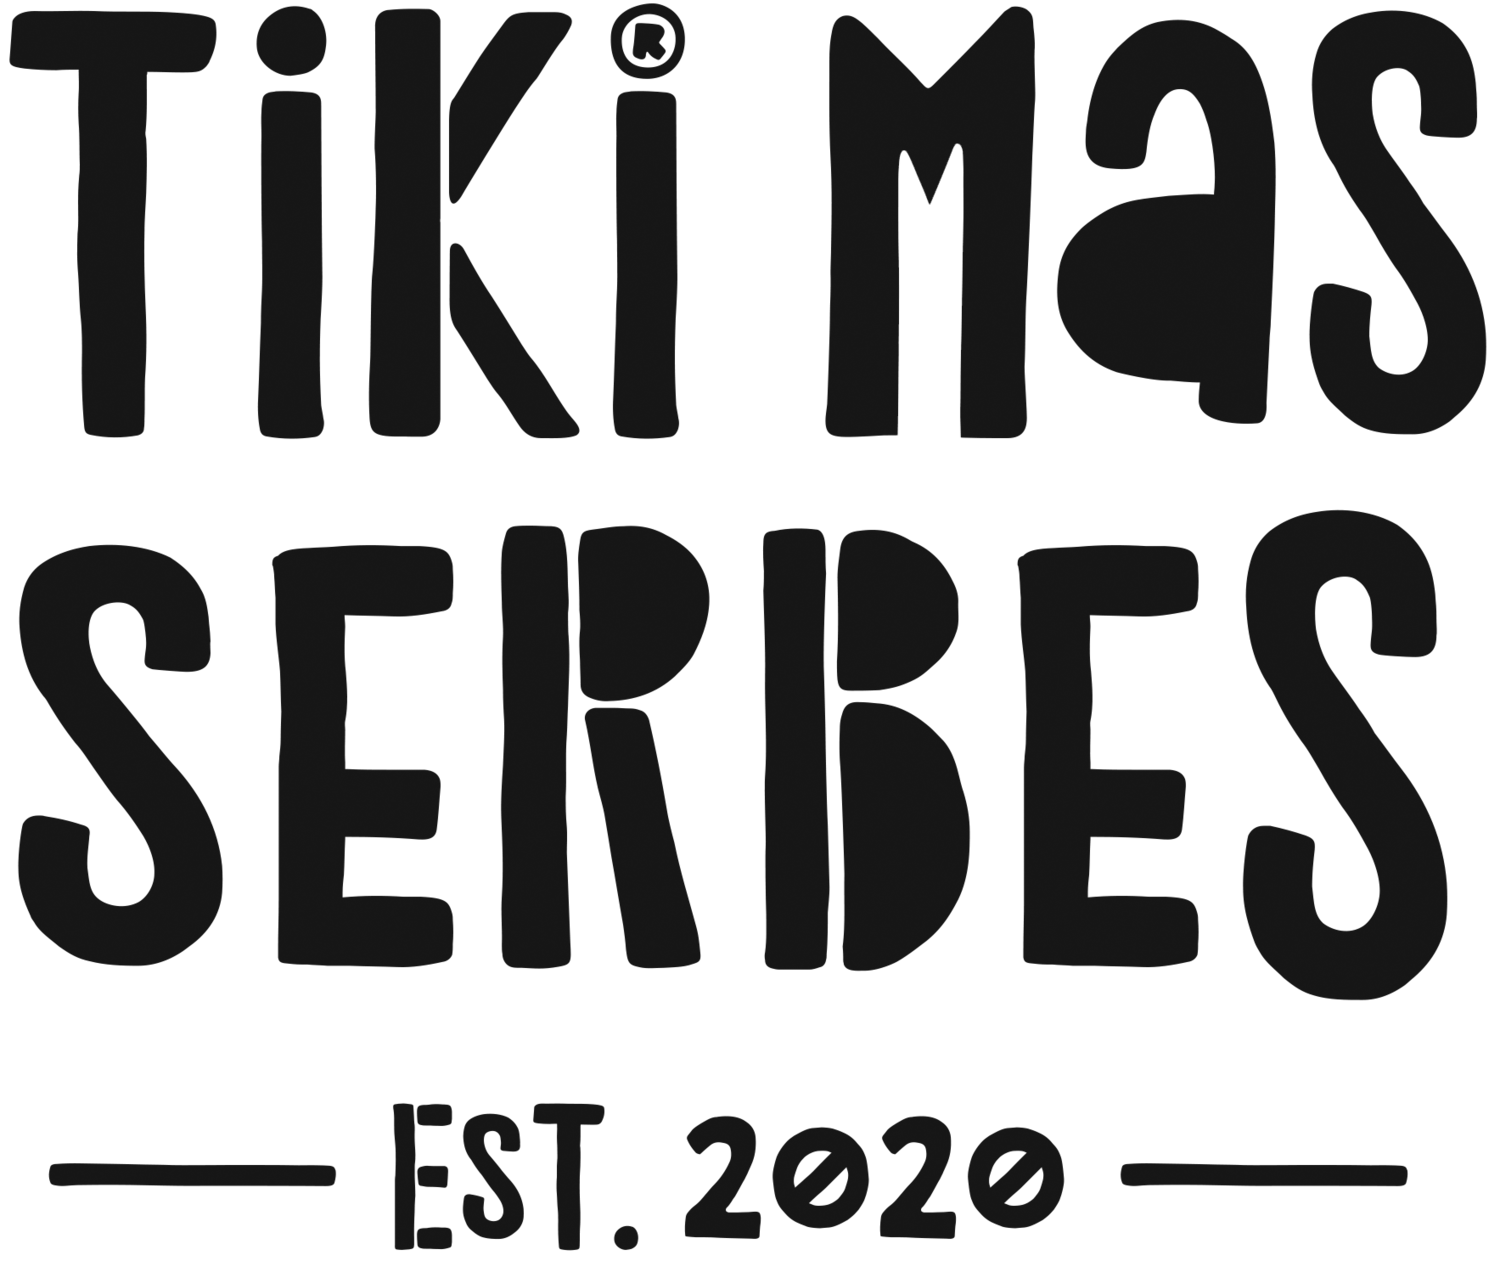 Tiki Mas Serbes